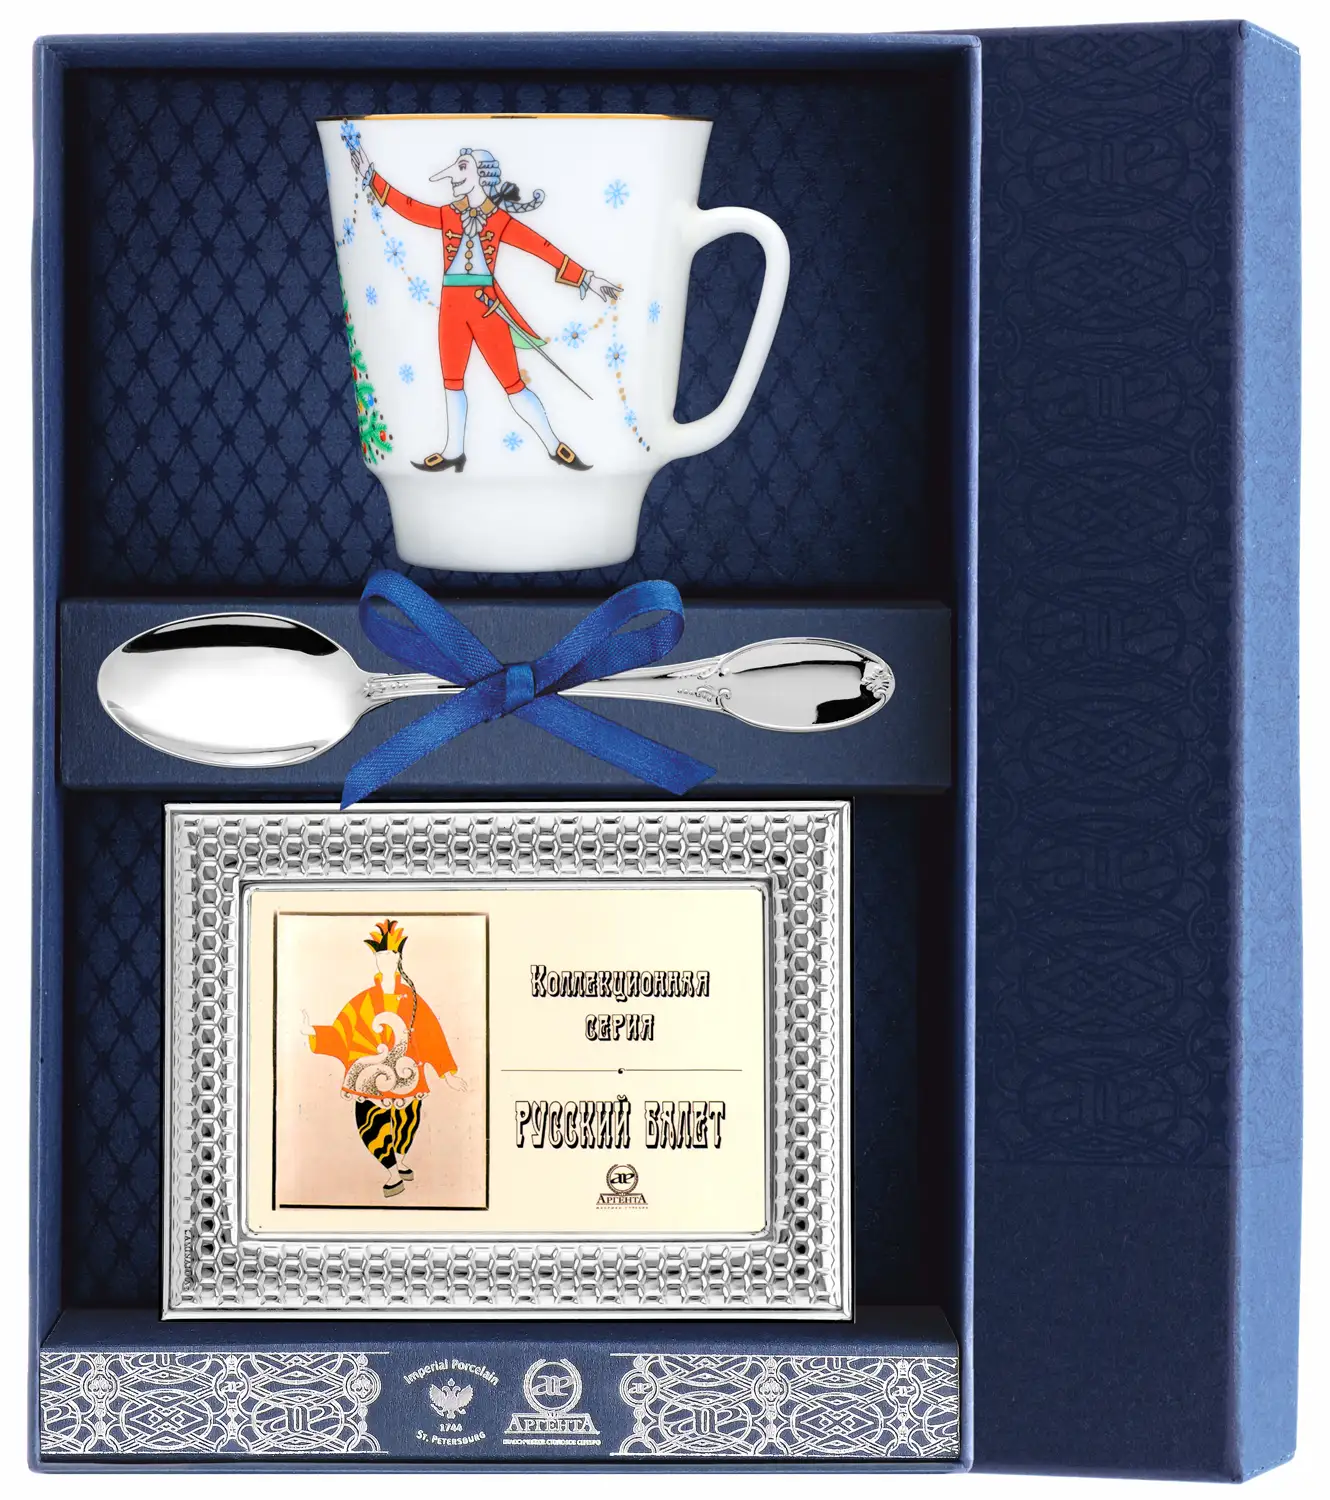 Набор чайный Майская - Балет Щелкунчик: ложка, рамка для фото, чашка (Серебро 925) набор чайный майская балет лебединое озеро ложка рамка для фото чашка серебро 925